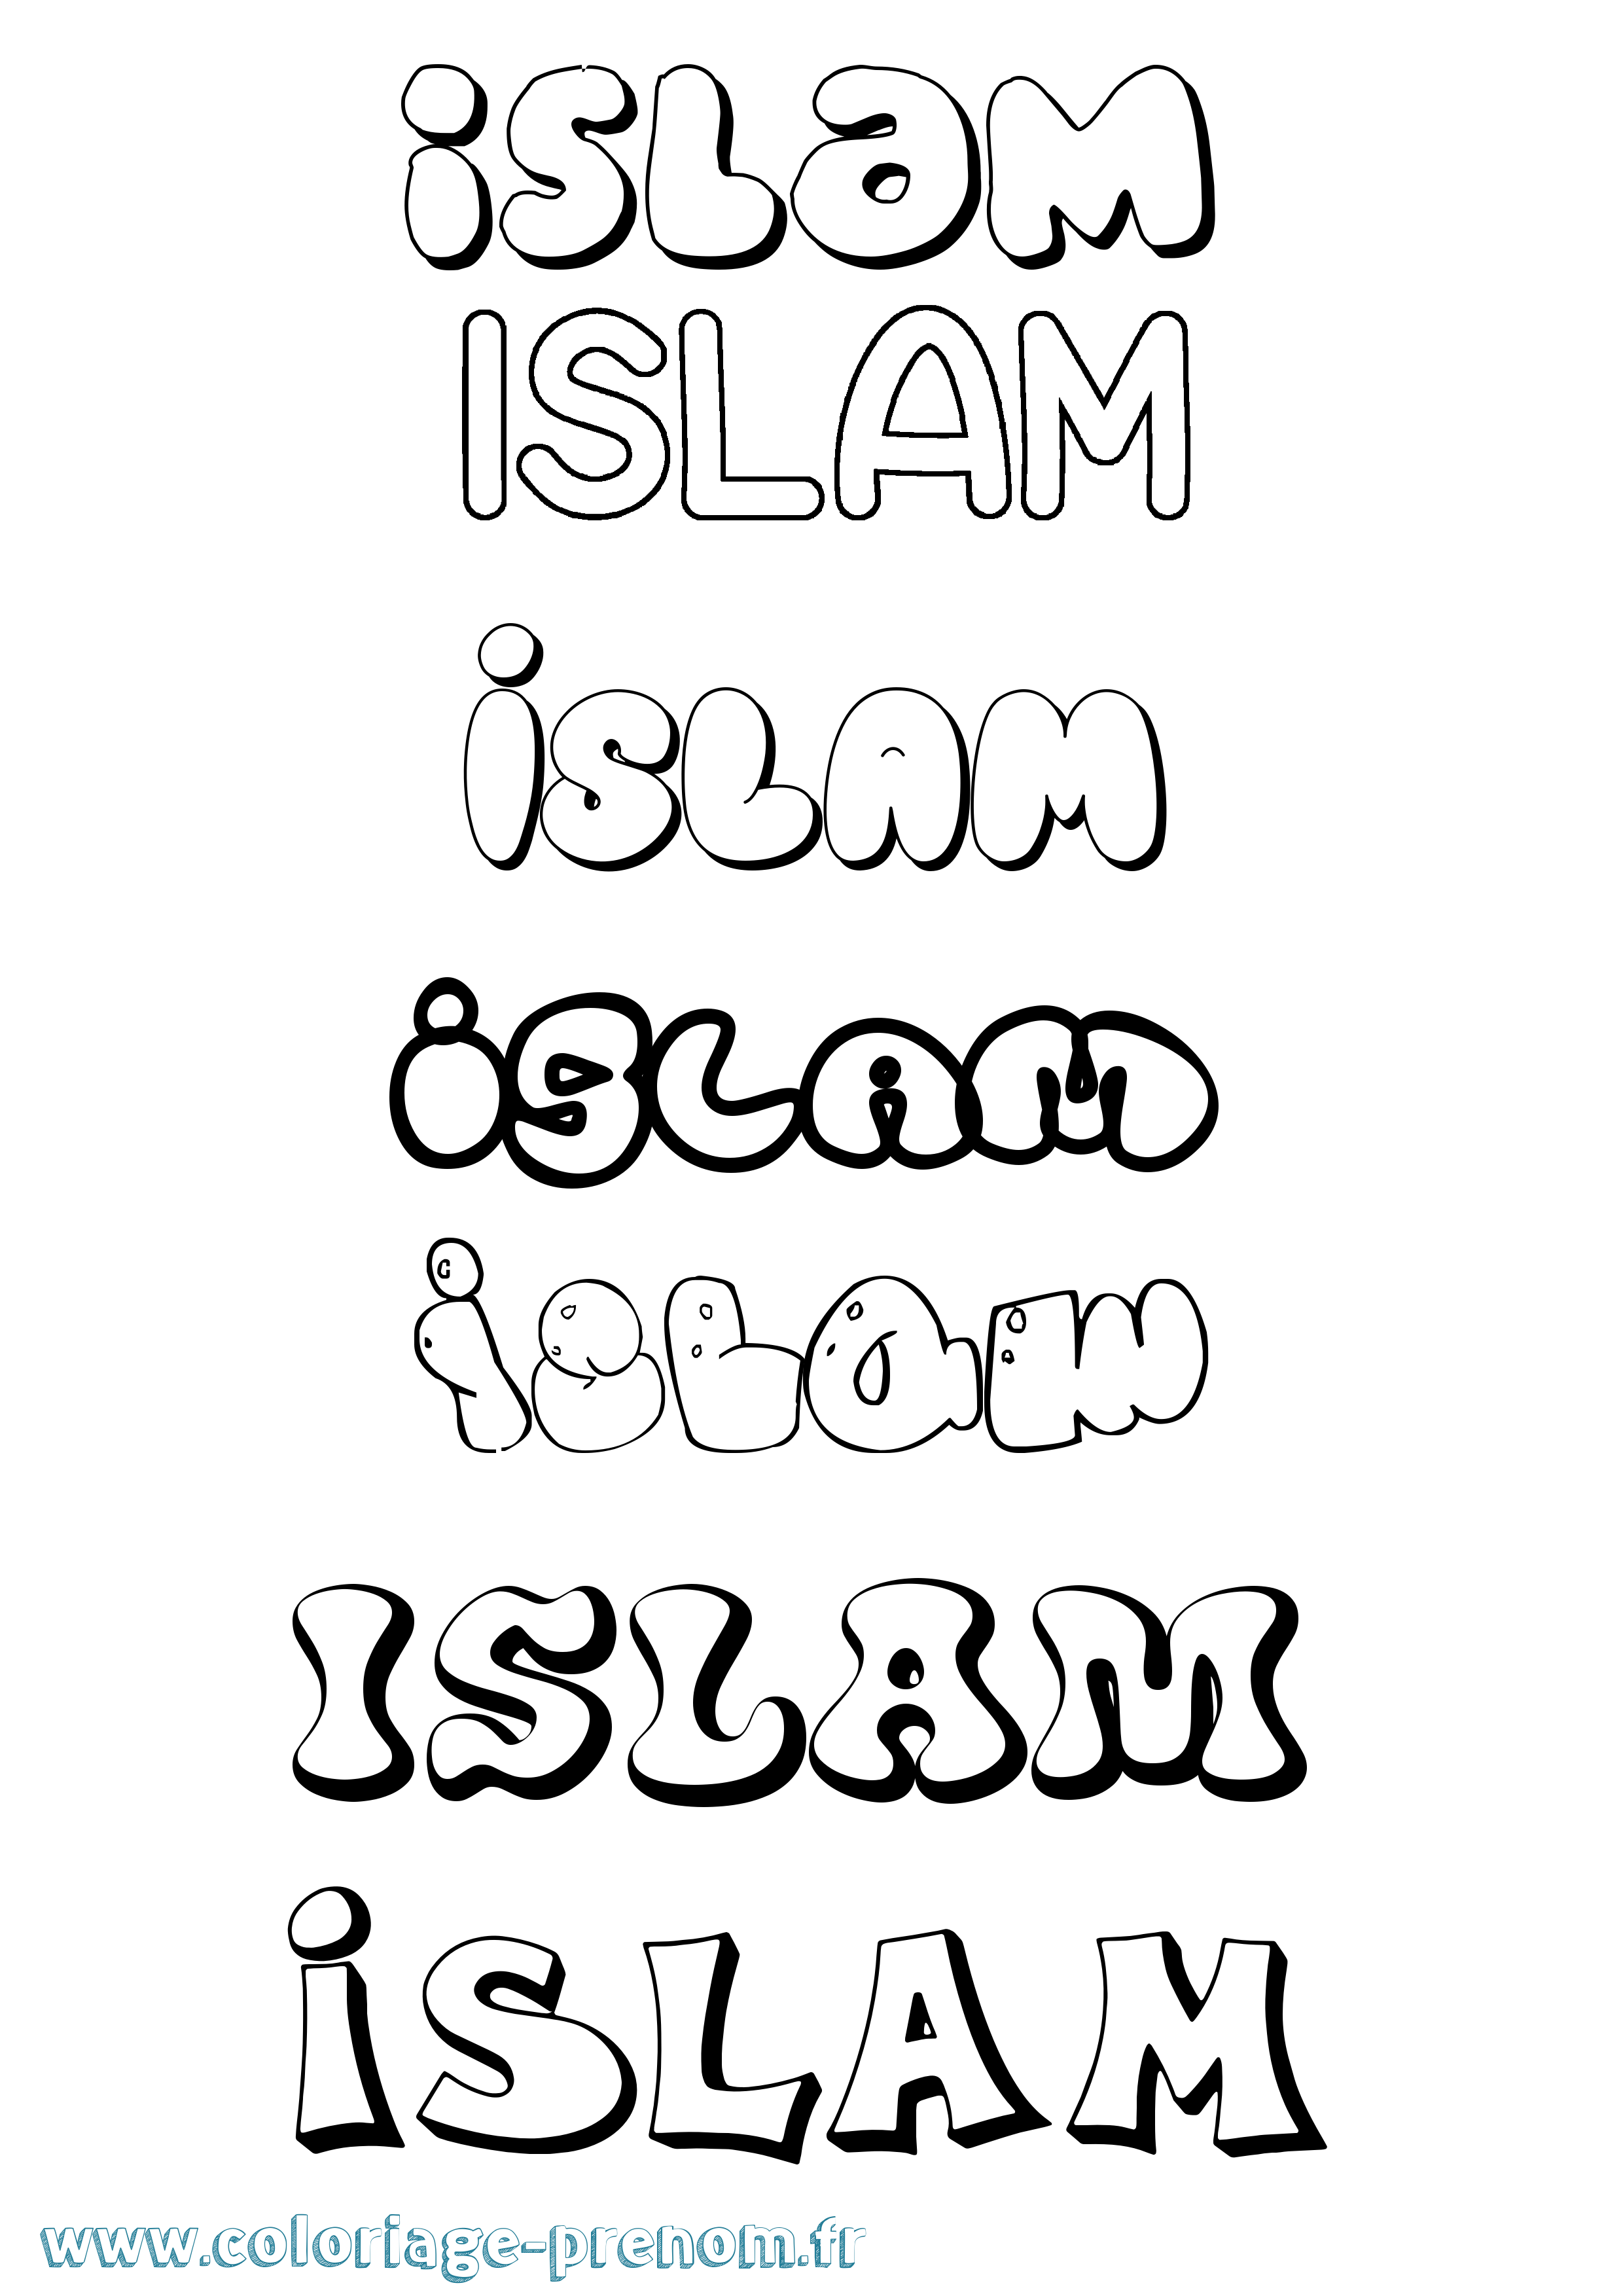 Coloriage prénom Islam